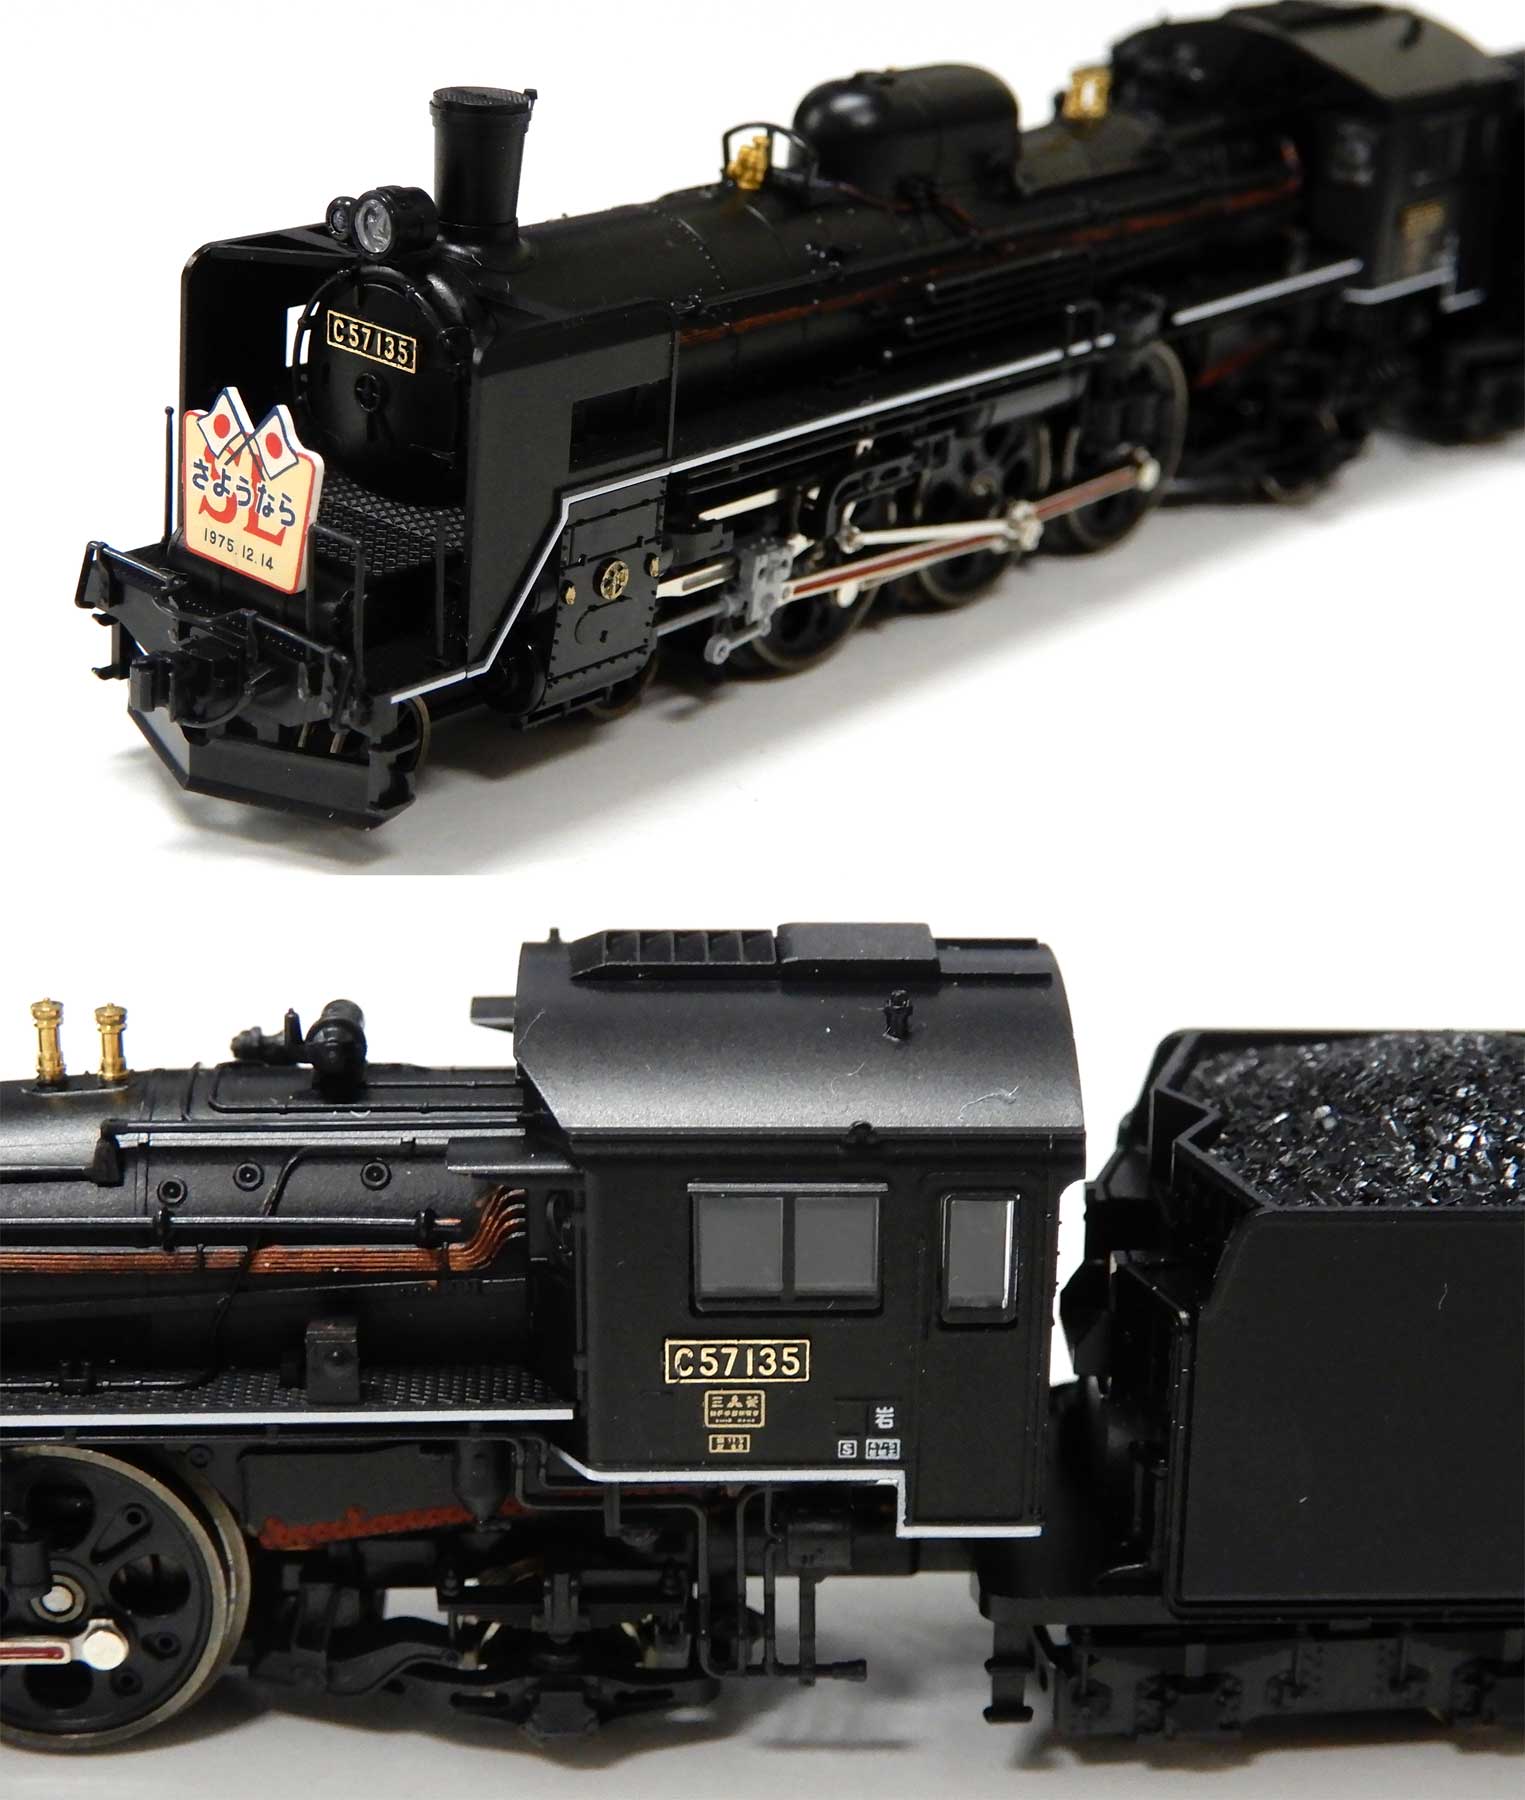 公式]鉄道模型(2003国鉄 C57形 蒸気機関車 (135号機))商品詳細｜TOMIX 